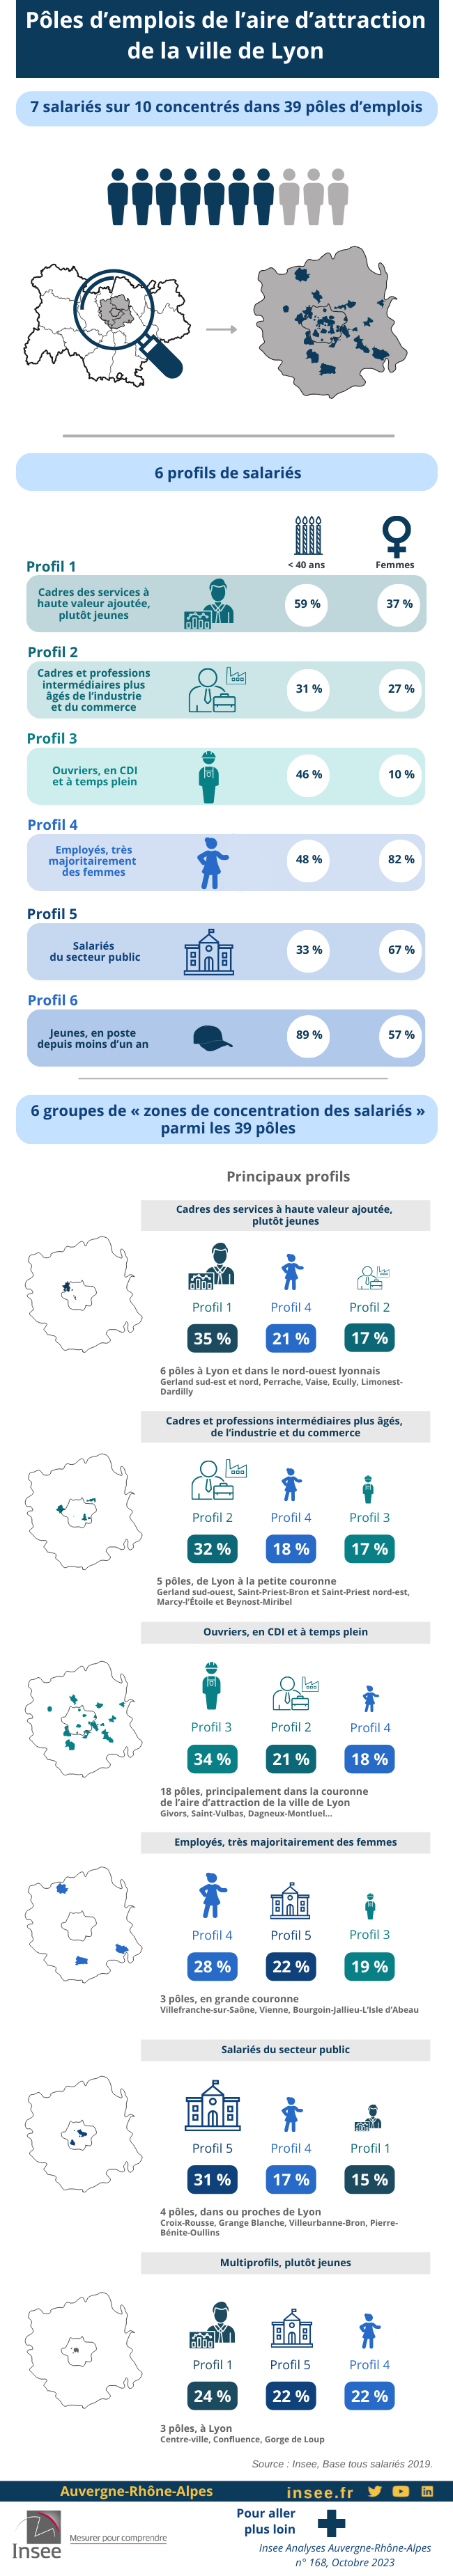 Importance de l’emploi ouvrier en couronne et dans près d’un pôle sur deux - Pôles d’emplois de l’aire d’attraction de la ville de Lyon.